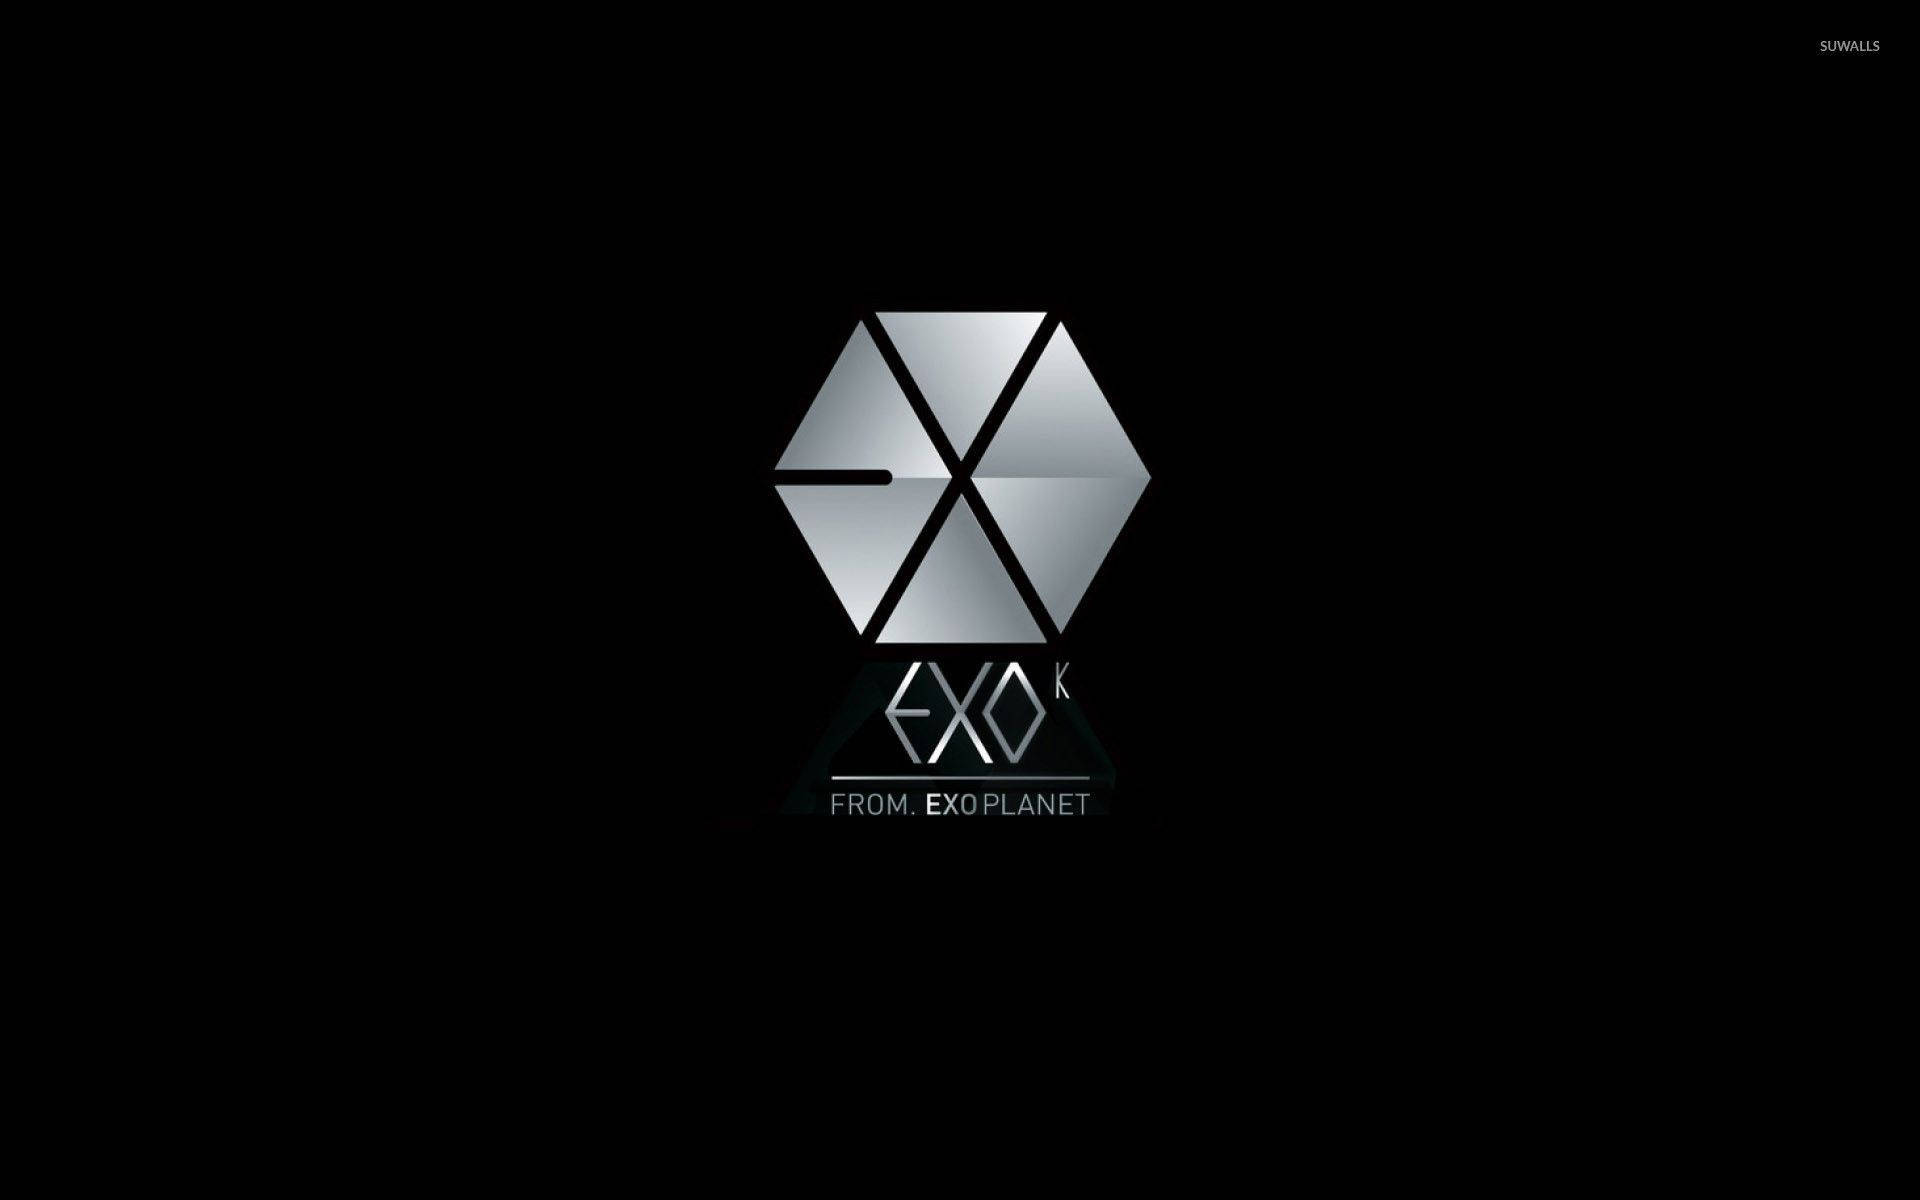 exo xoxo logo wallpaper